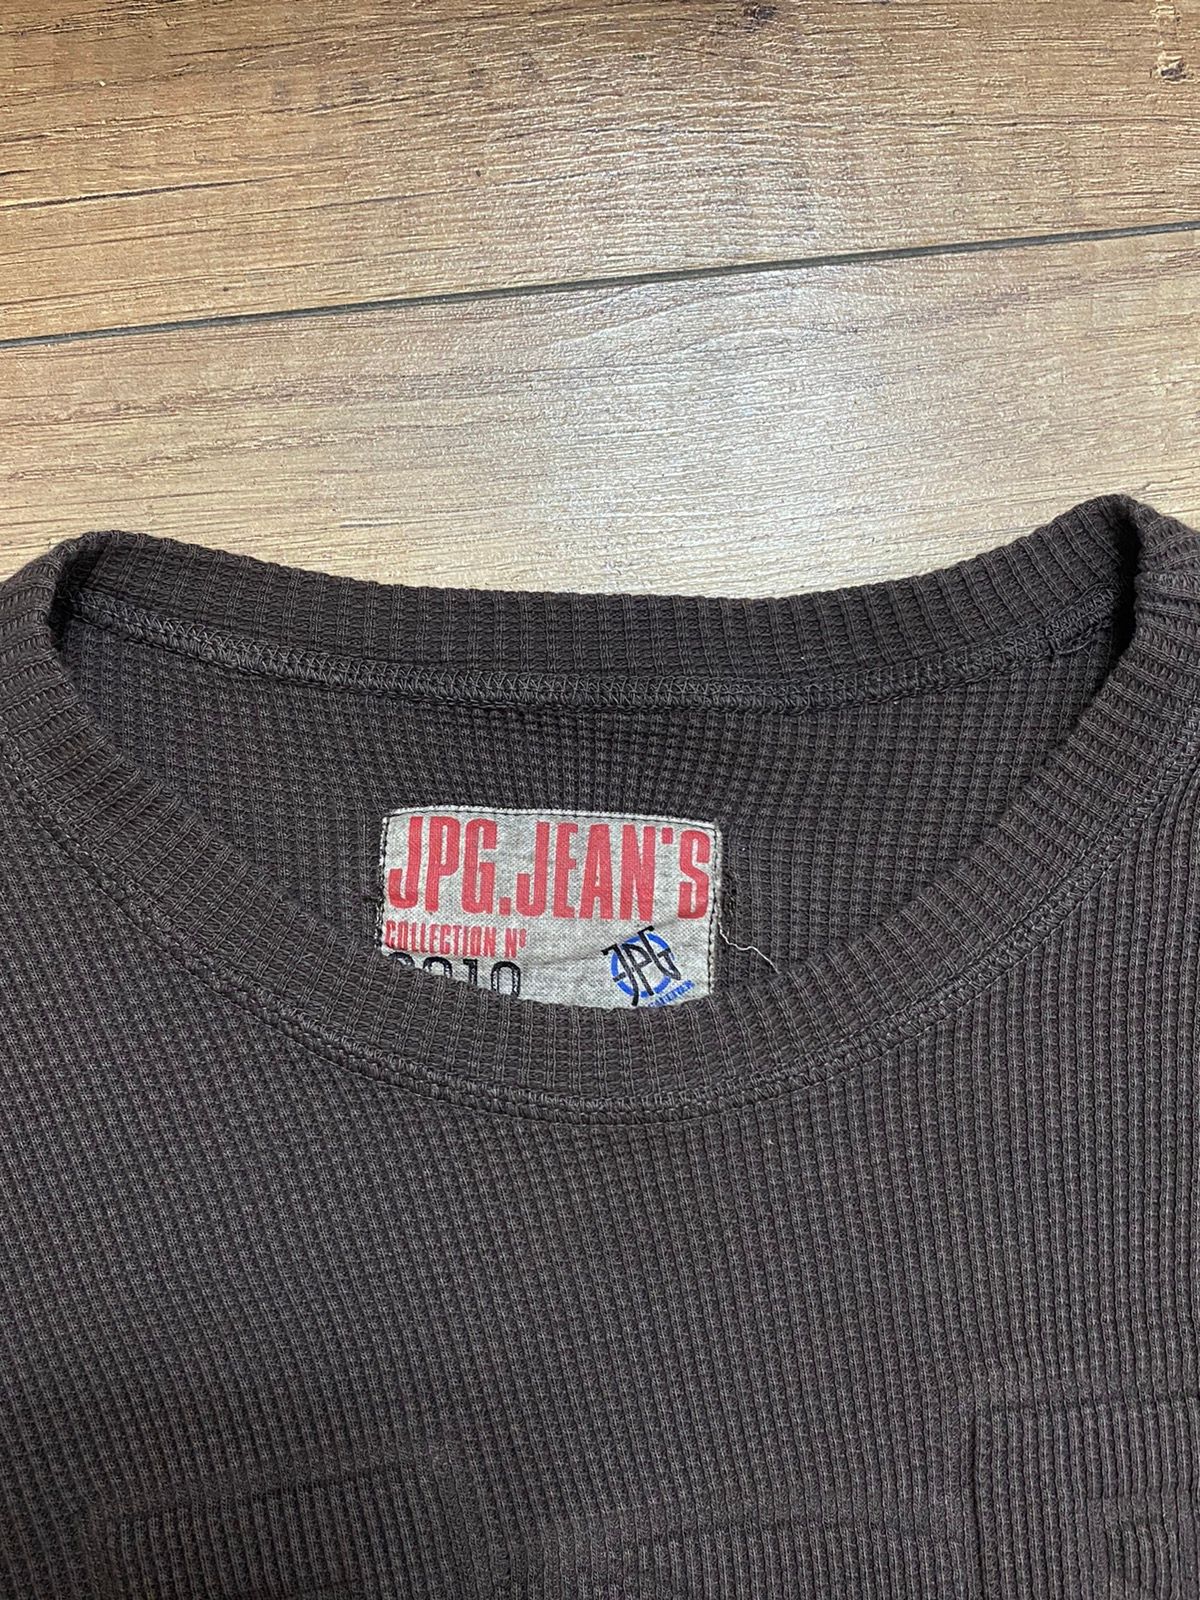 Jean Paul Gaultier JPG Men’s Knit Sweater Size US S / EU 44-46 / 1 - 5 Thumbnail